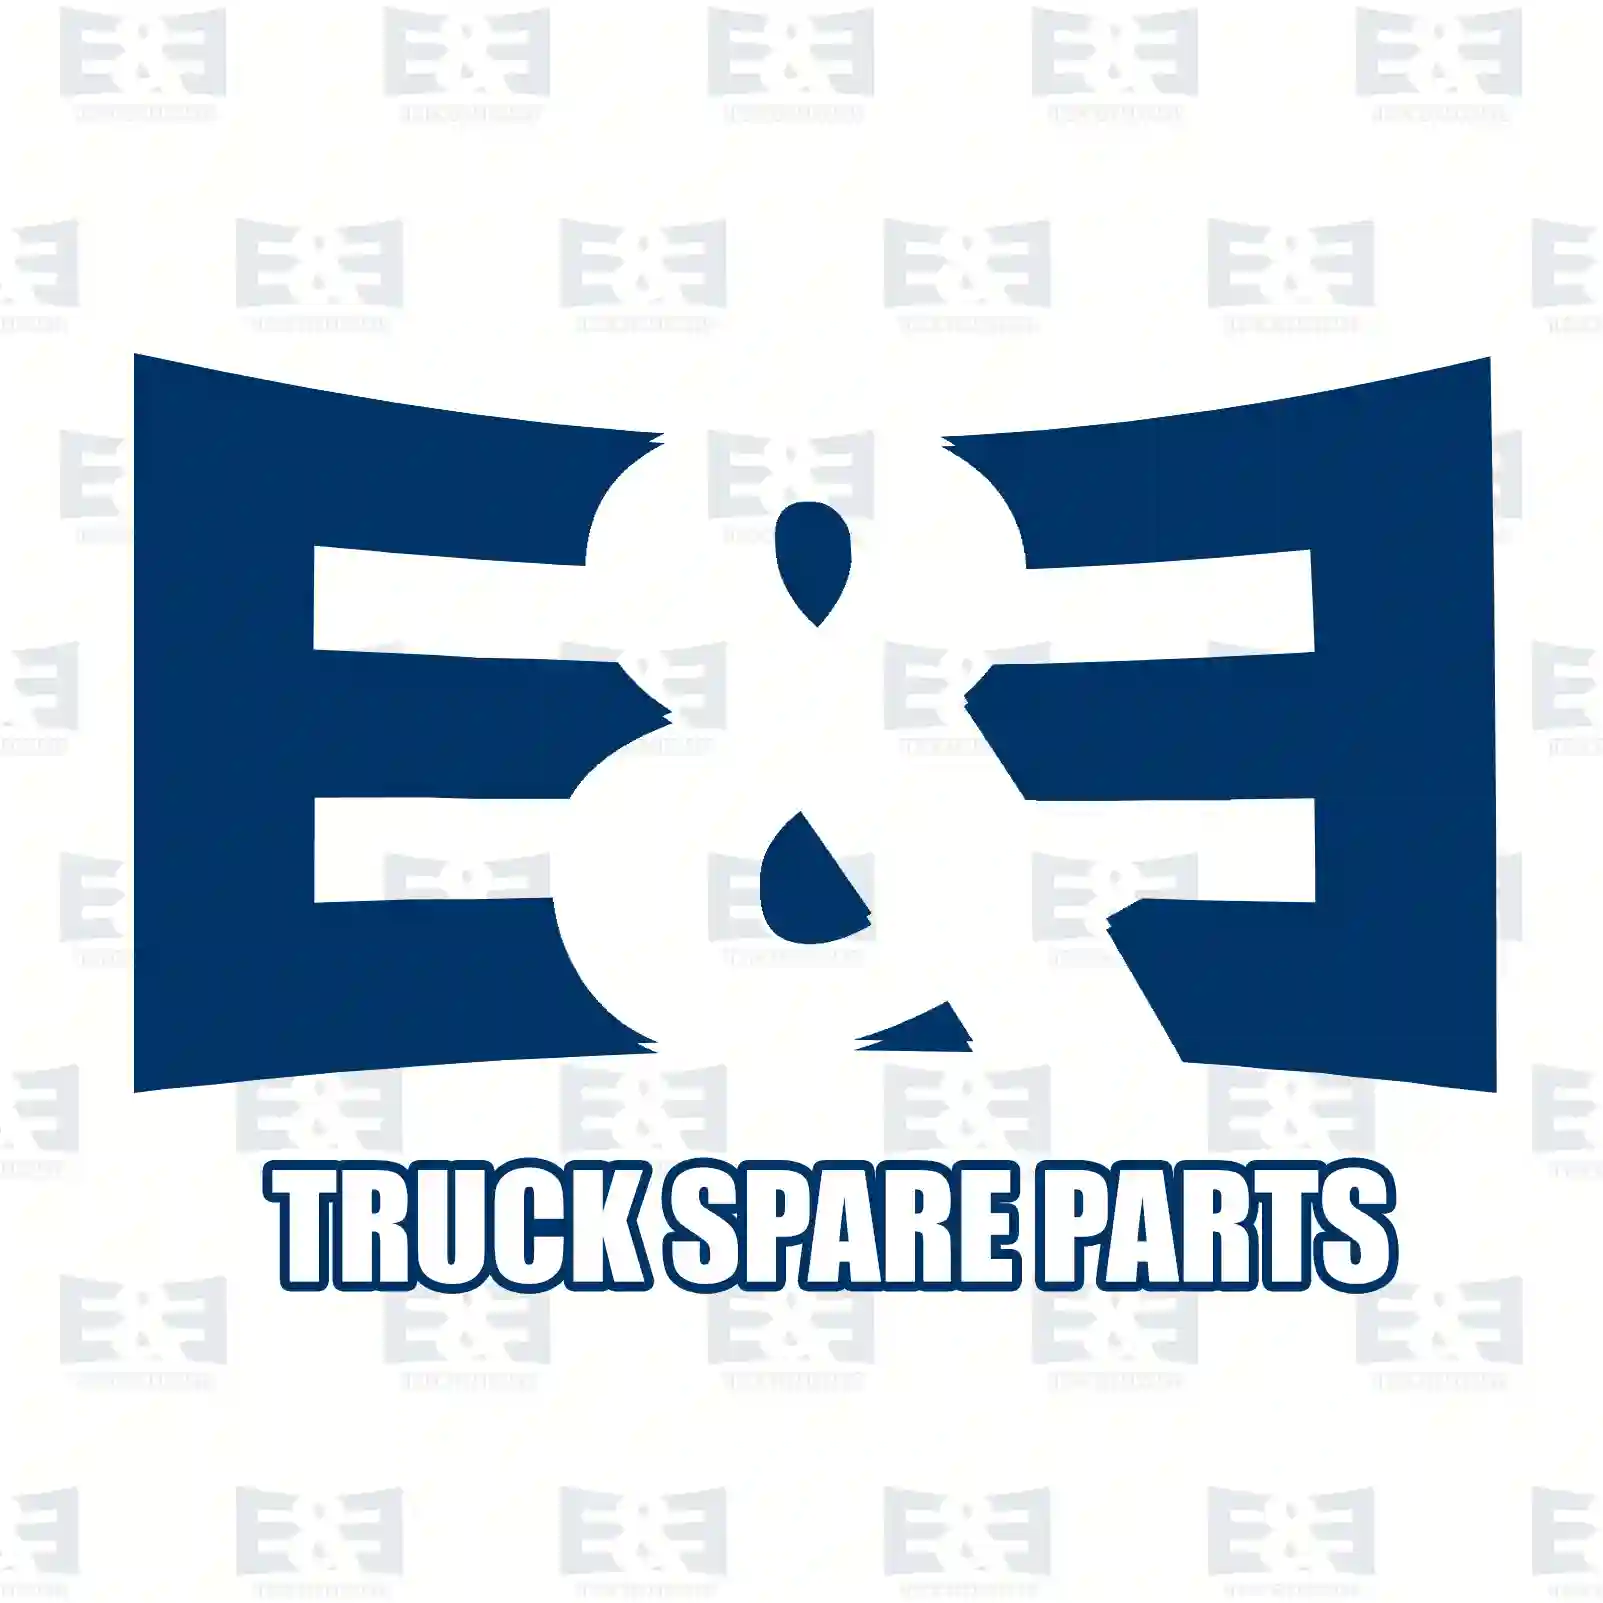 Brake disc, 2E2295109, AMPB889, MAK7529, PAK3545, PAK5513, PAK7404, RAK7404, MBR1832 ||  2E2295109 E&E Truck Spare Parts | Truck Spare Parts, Auotomotive Spare Parts Brake disc, 2E2295109, AMPB889, MAK7529, PAK3545, PAK5513, PAK7404, RAK7404, MBR1832 ||  2E2295109 E&E Truck Spare Parts | Truck Spare Parts, Auotomotive Spare Parts